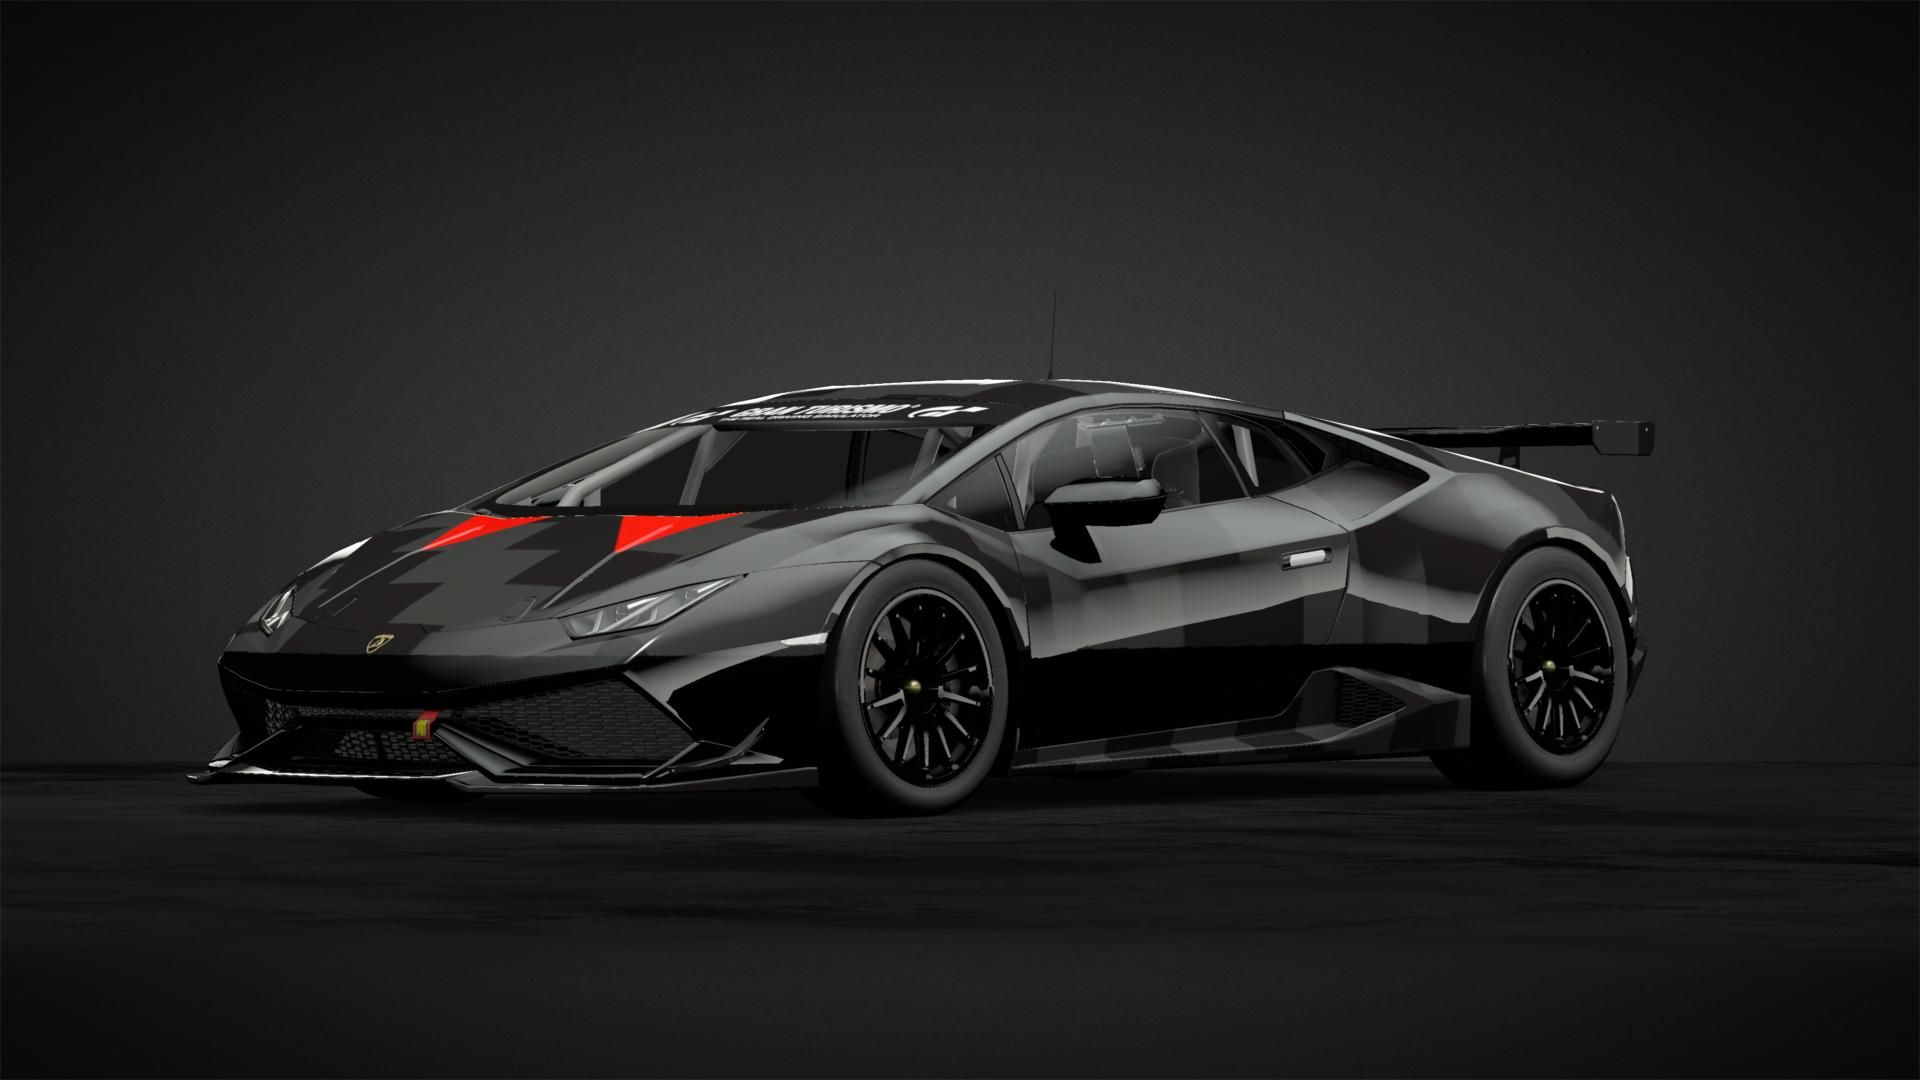 Lamborghini sesto elemento Livery by Mo018nte. Community. Gran Turismo Sport